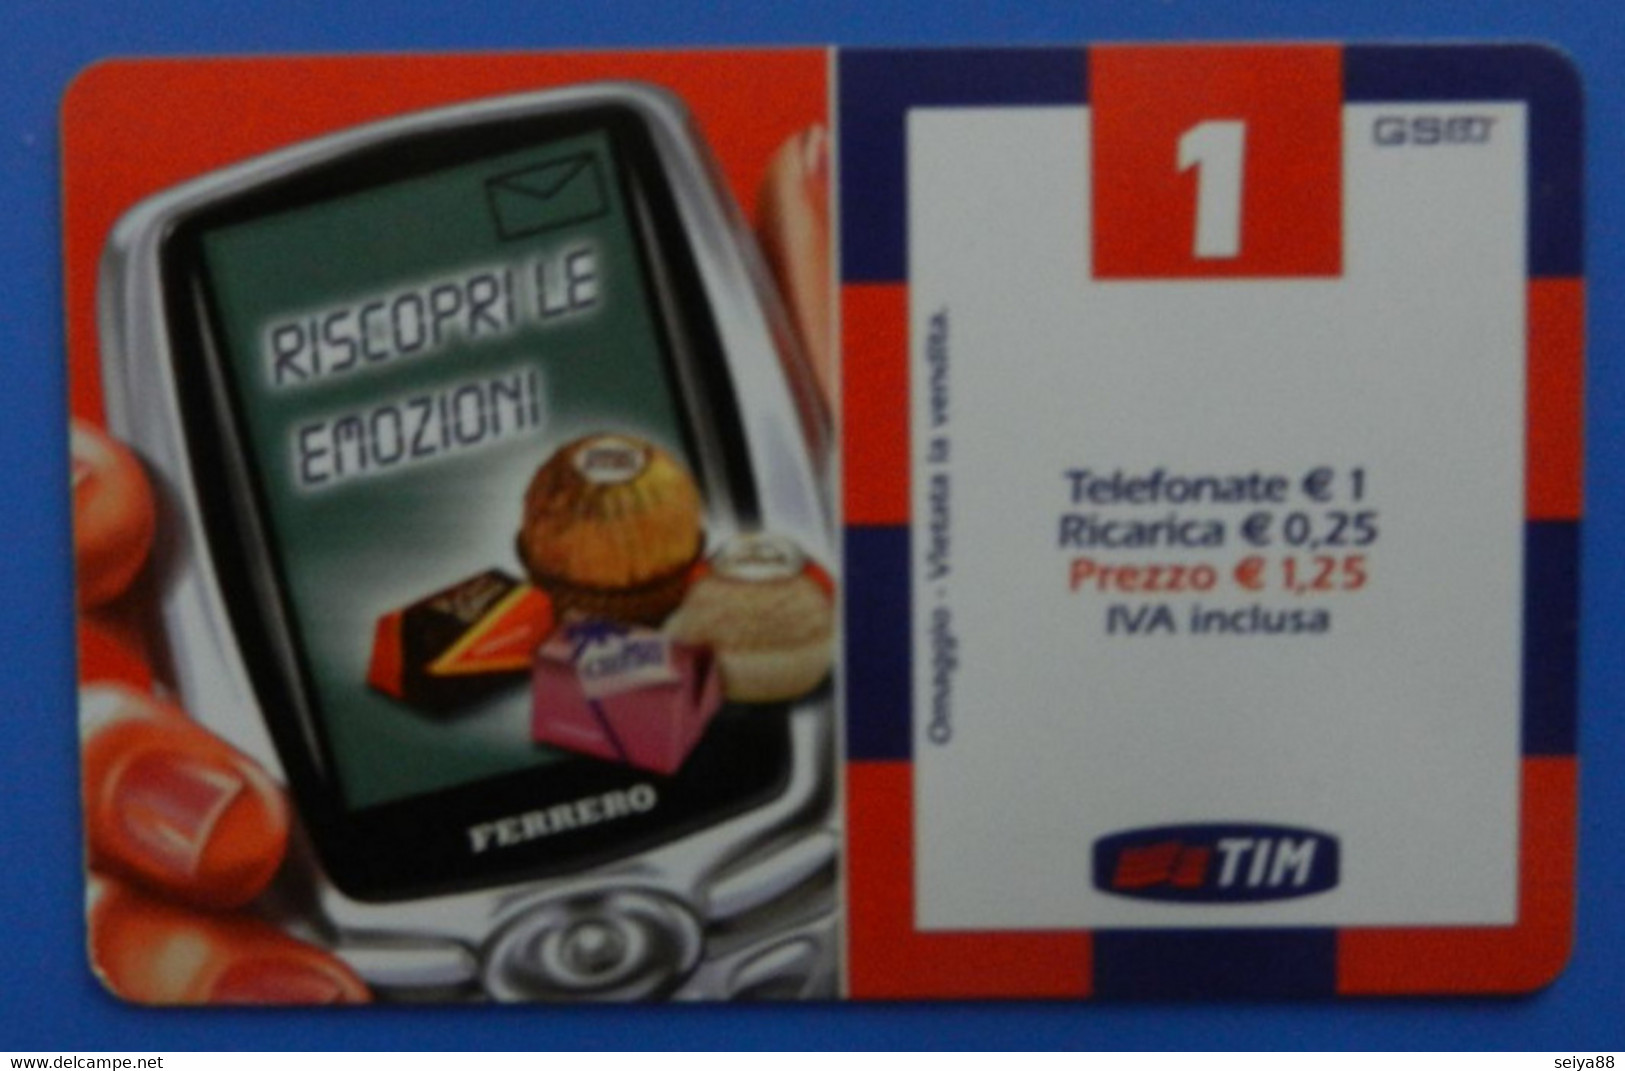 Italia Italy Tim 1€ Riscopri Le Emozioni Ferrero Rocher Mon Cheri Pocket Coffee Raffaello - Opérateurs Télécom